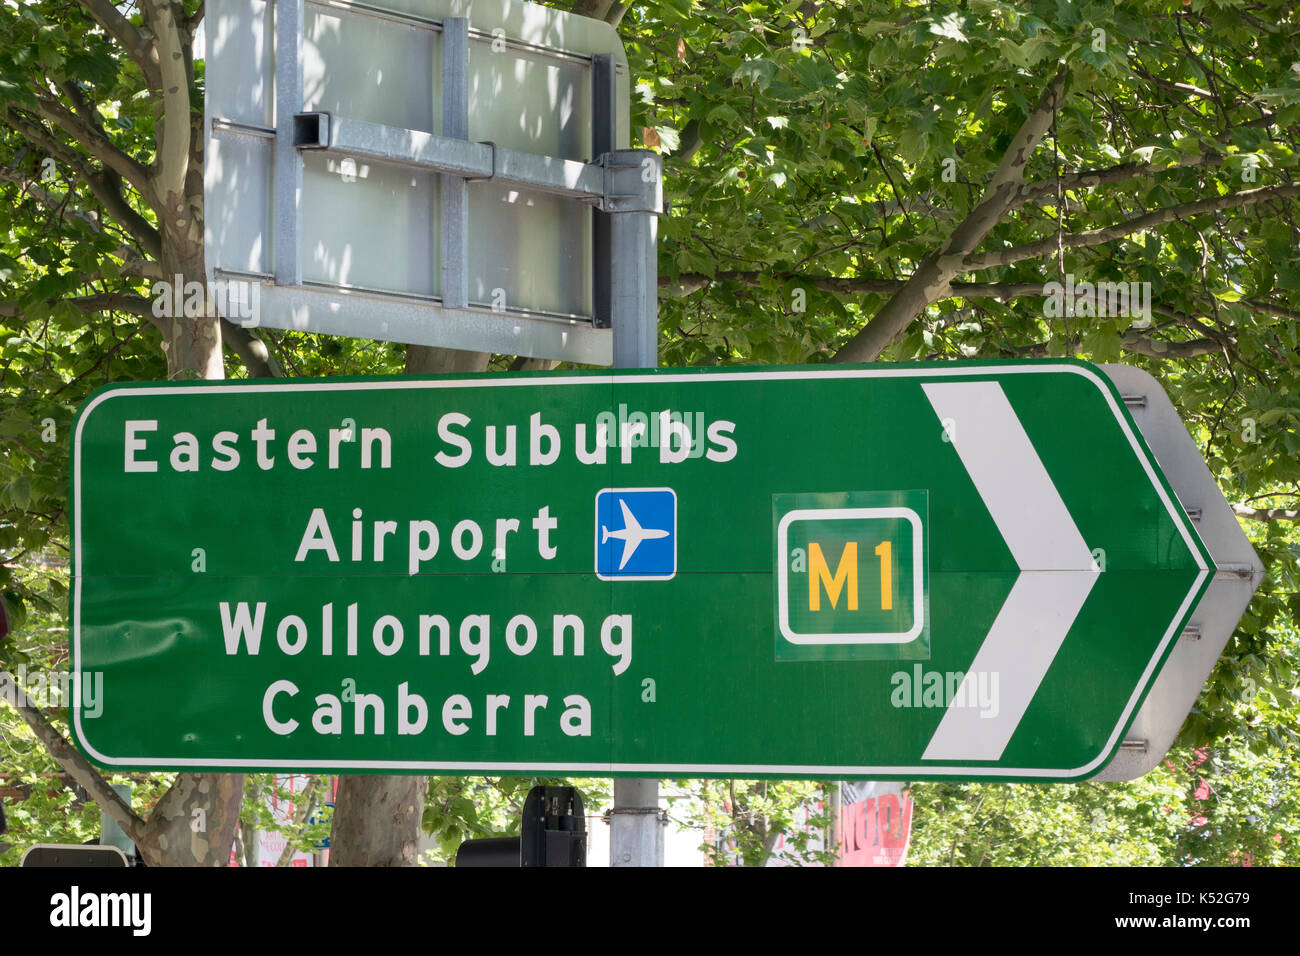 Green Road direzione segni di traffico a Sydney in Australia per aeroporto e sobborghi Orientali Foto Stock